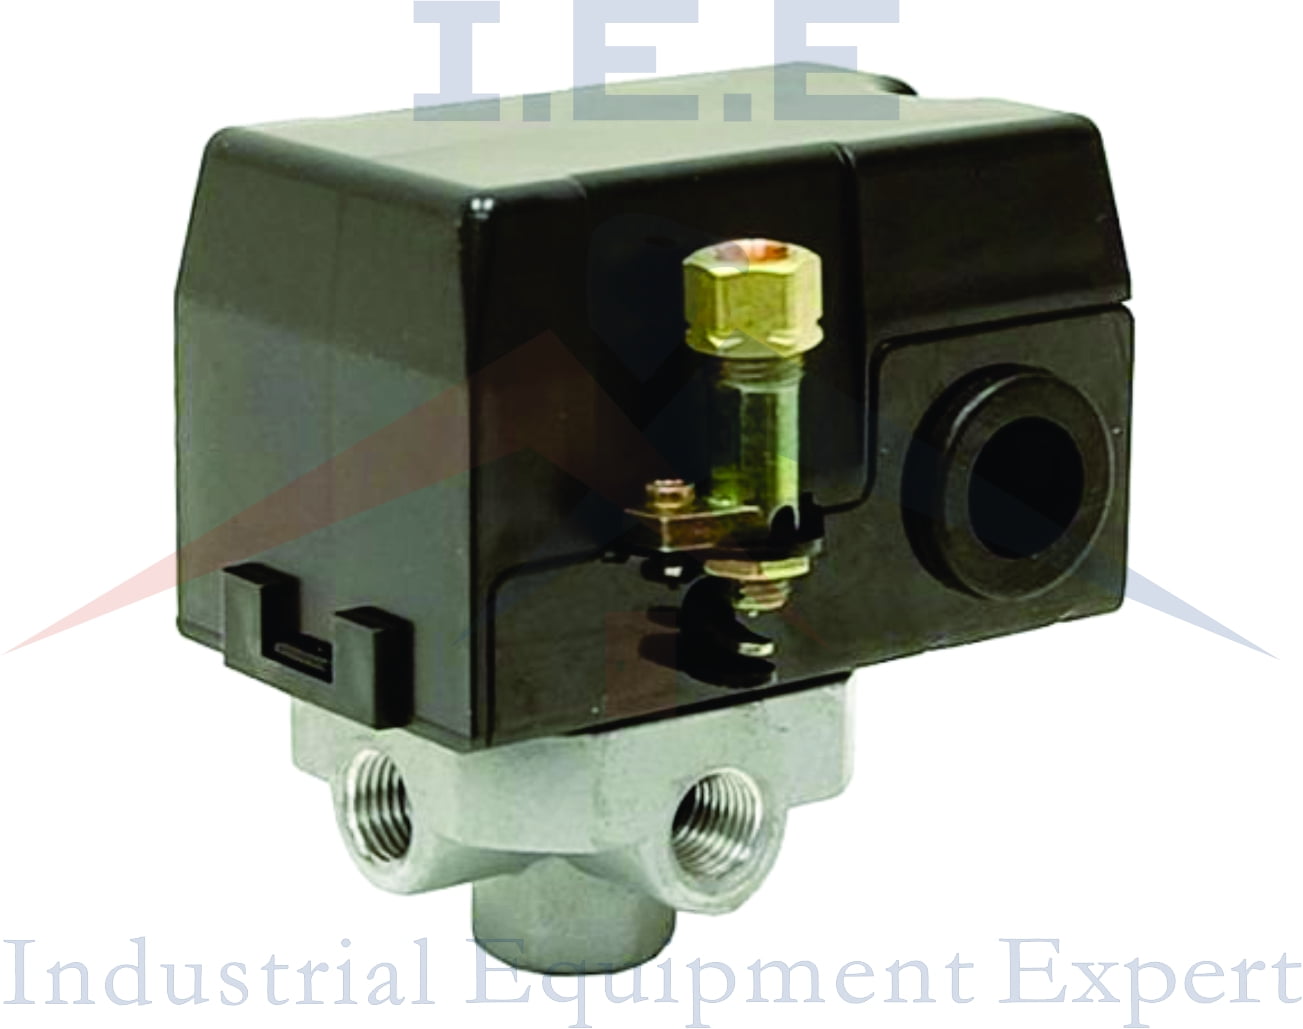 A17374 Craftsman  Air Compressor Pressure Switch  150/120 PSI  A17374SV  **OEM** 